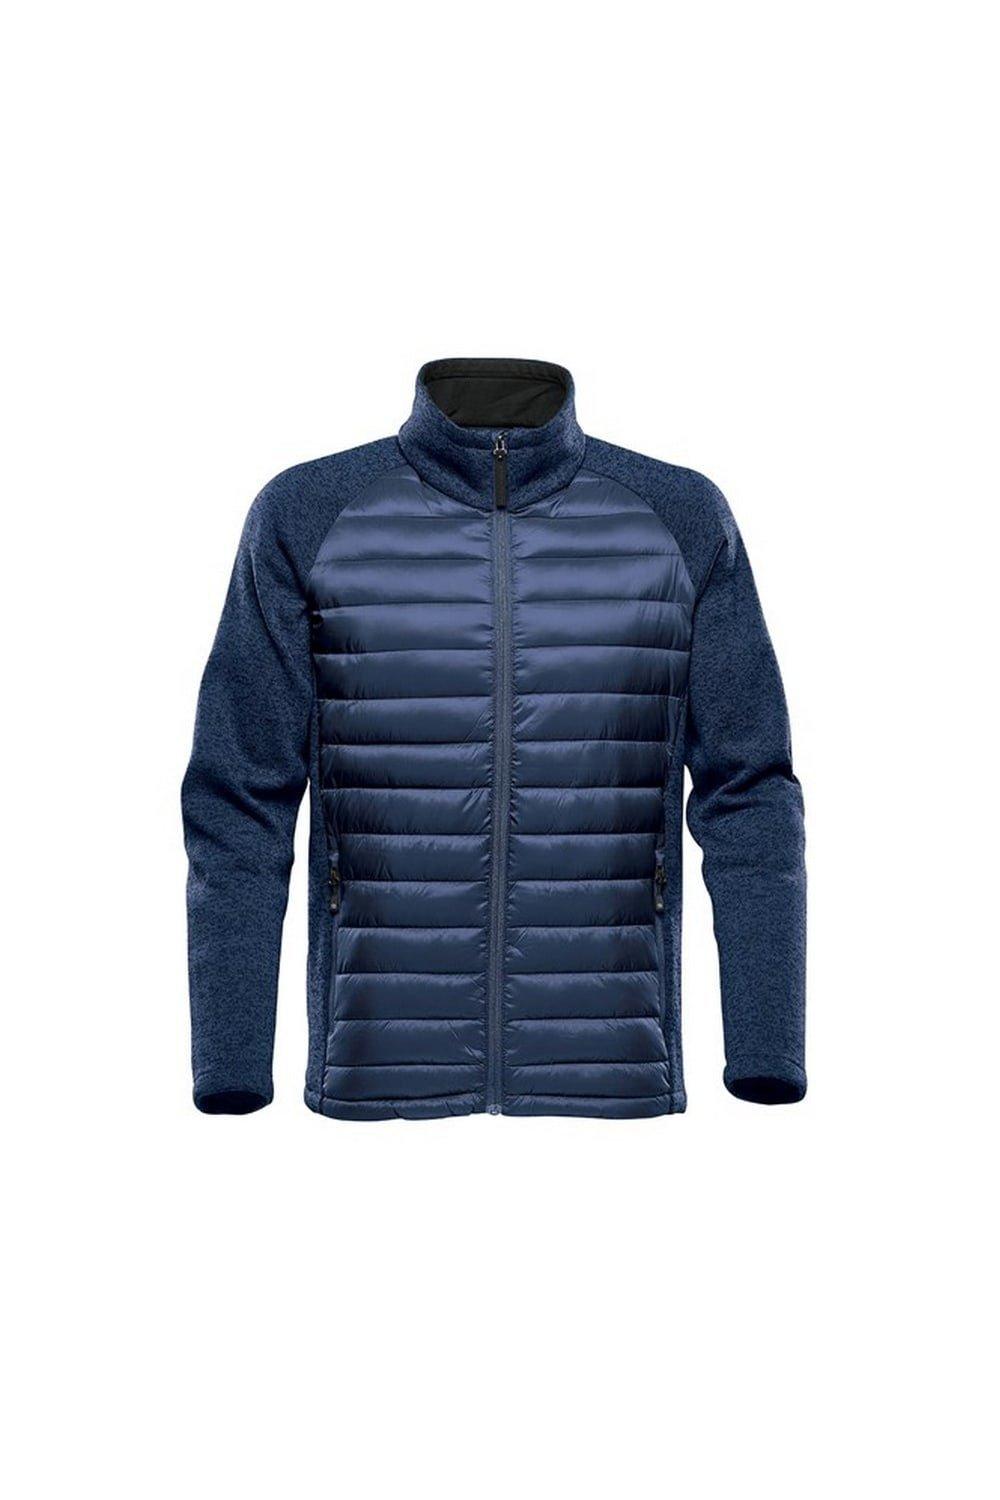 Легкая стеганая куртка Narvik Stormtech, синий куртка стеганая легкая без рукаовв hero s синий